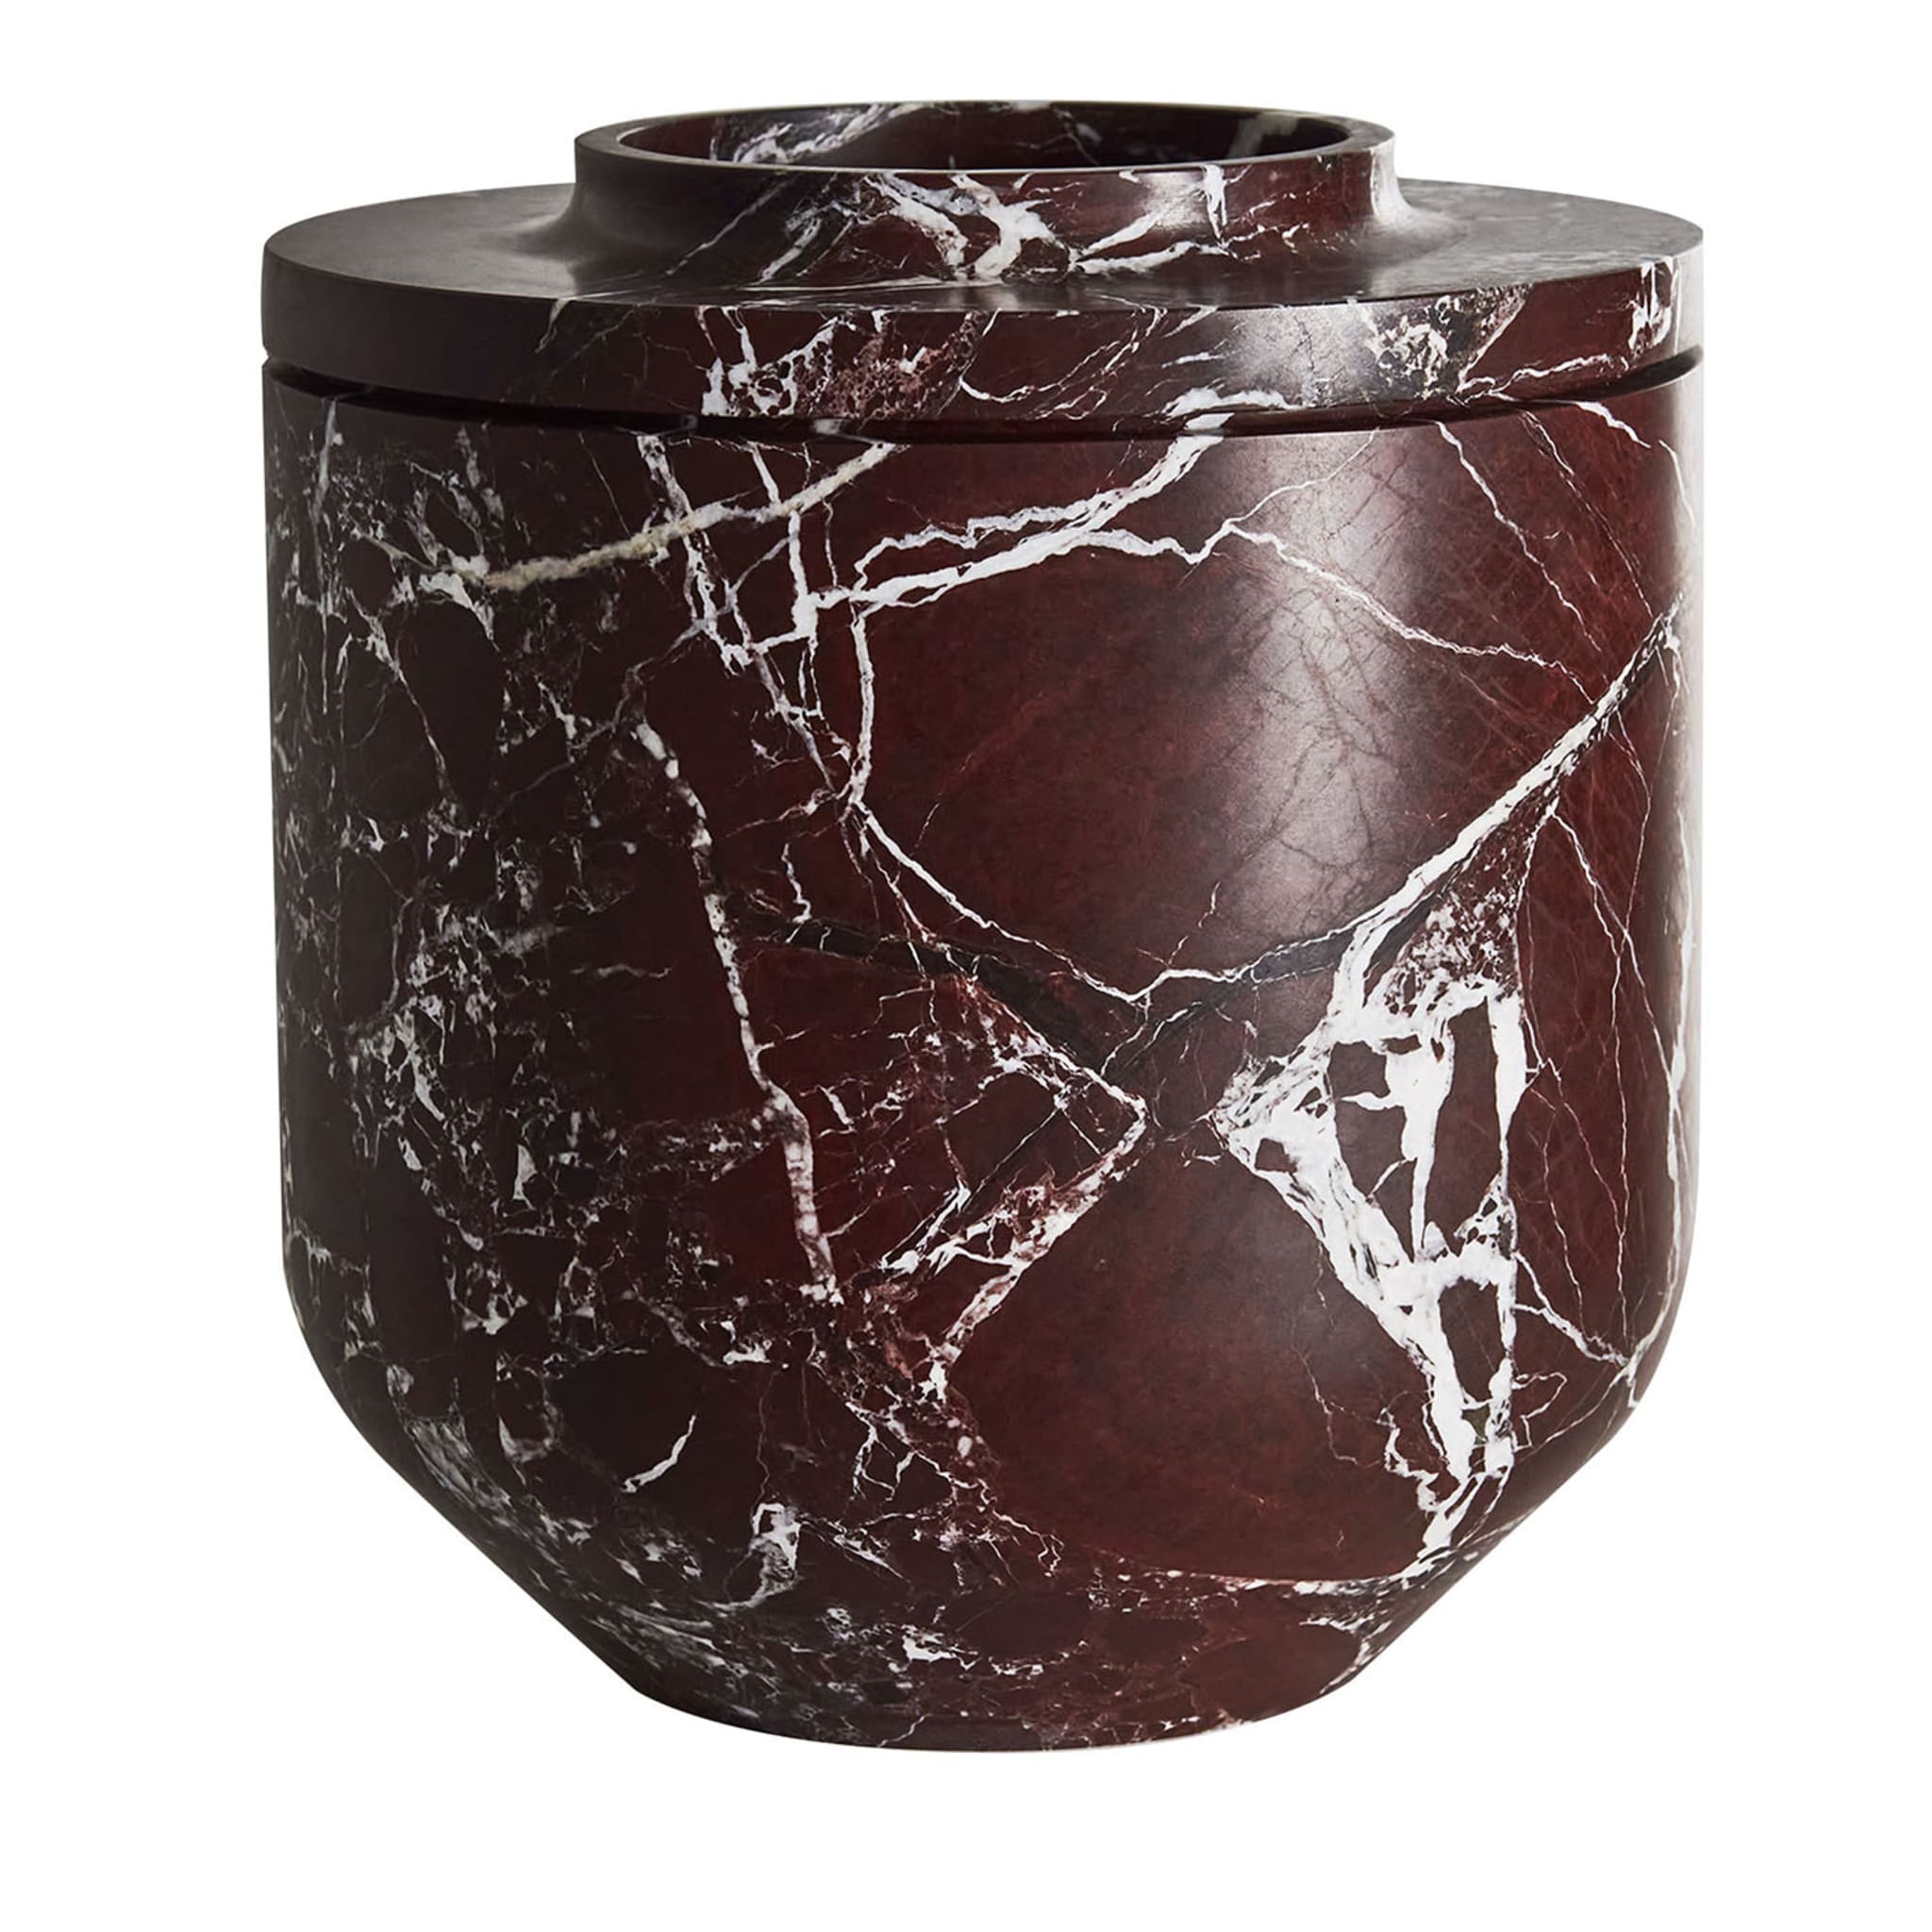 Königliche große burgunderfarbene vase von Christophe Pillet - Hauptansicht